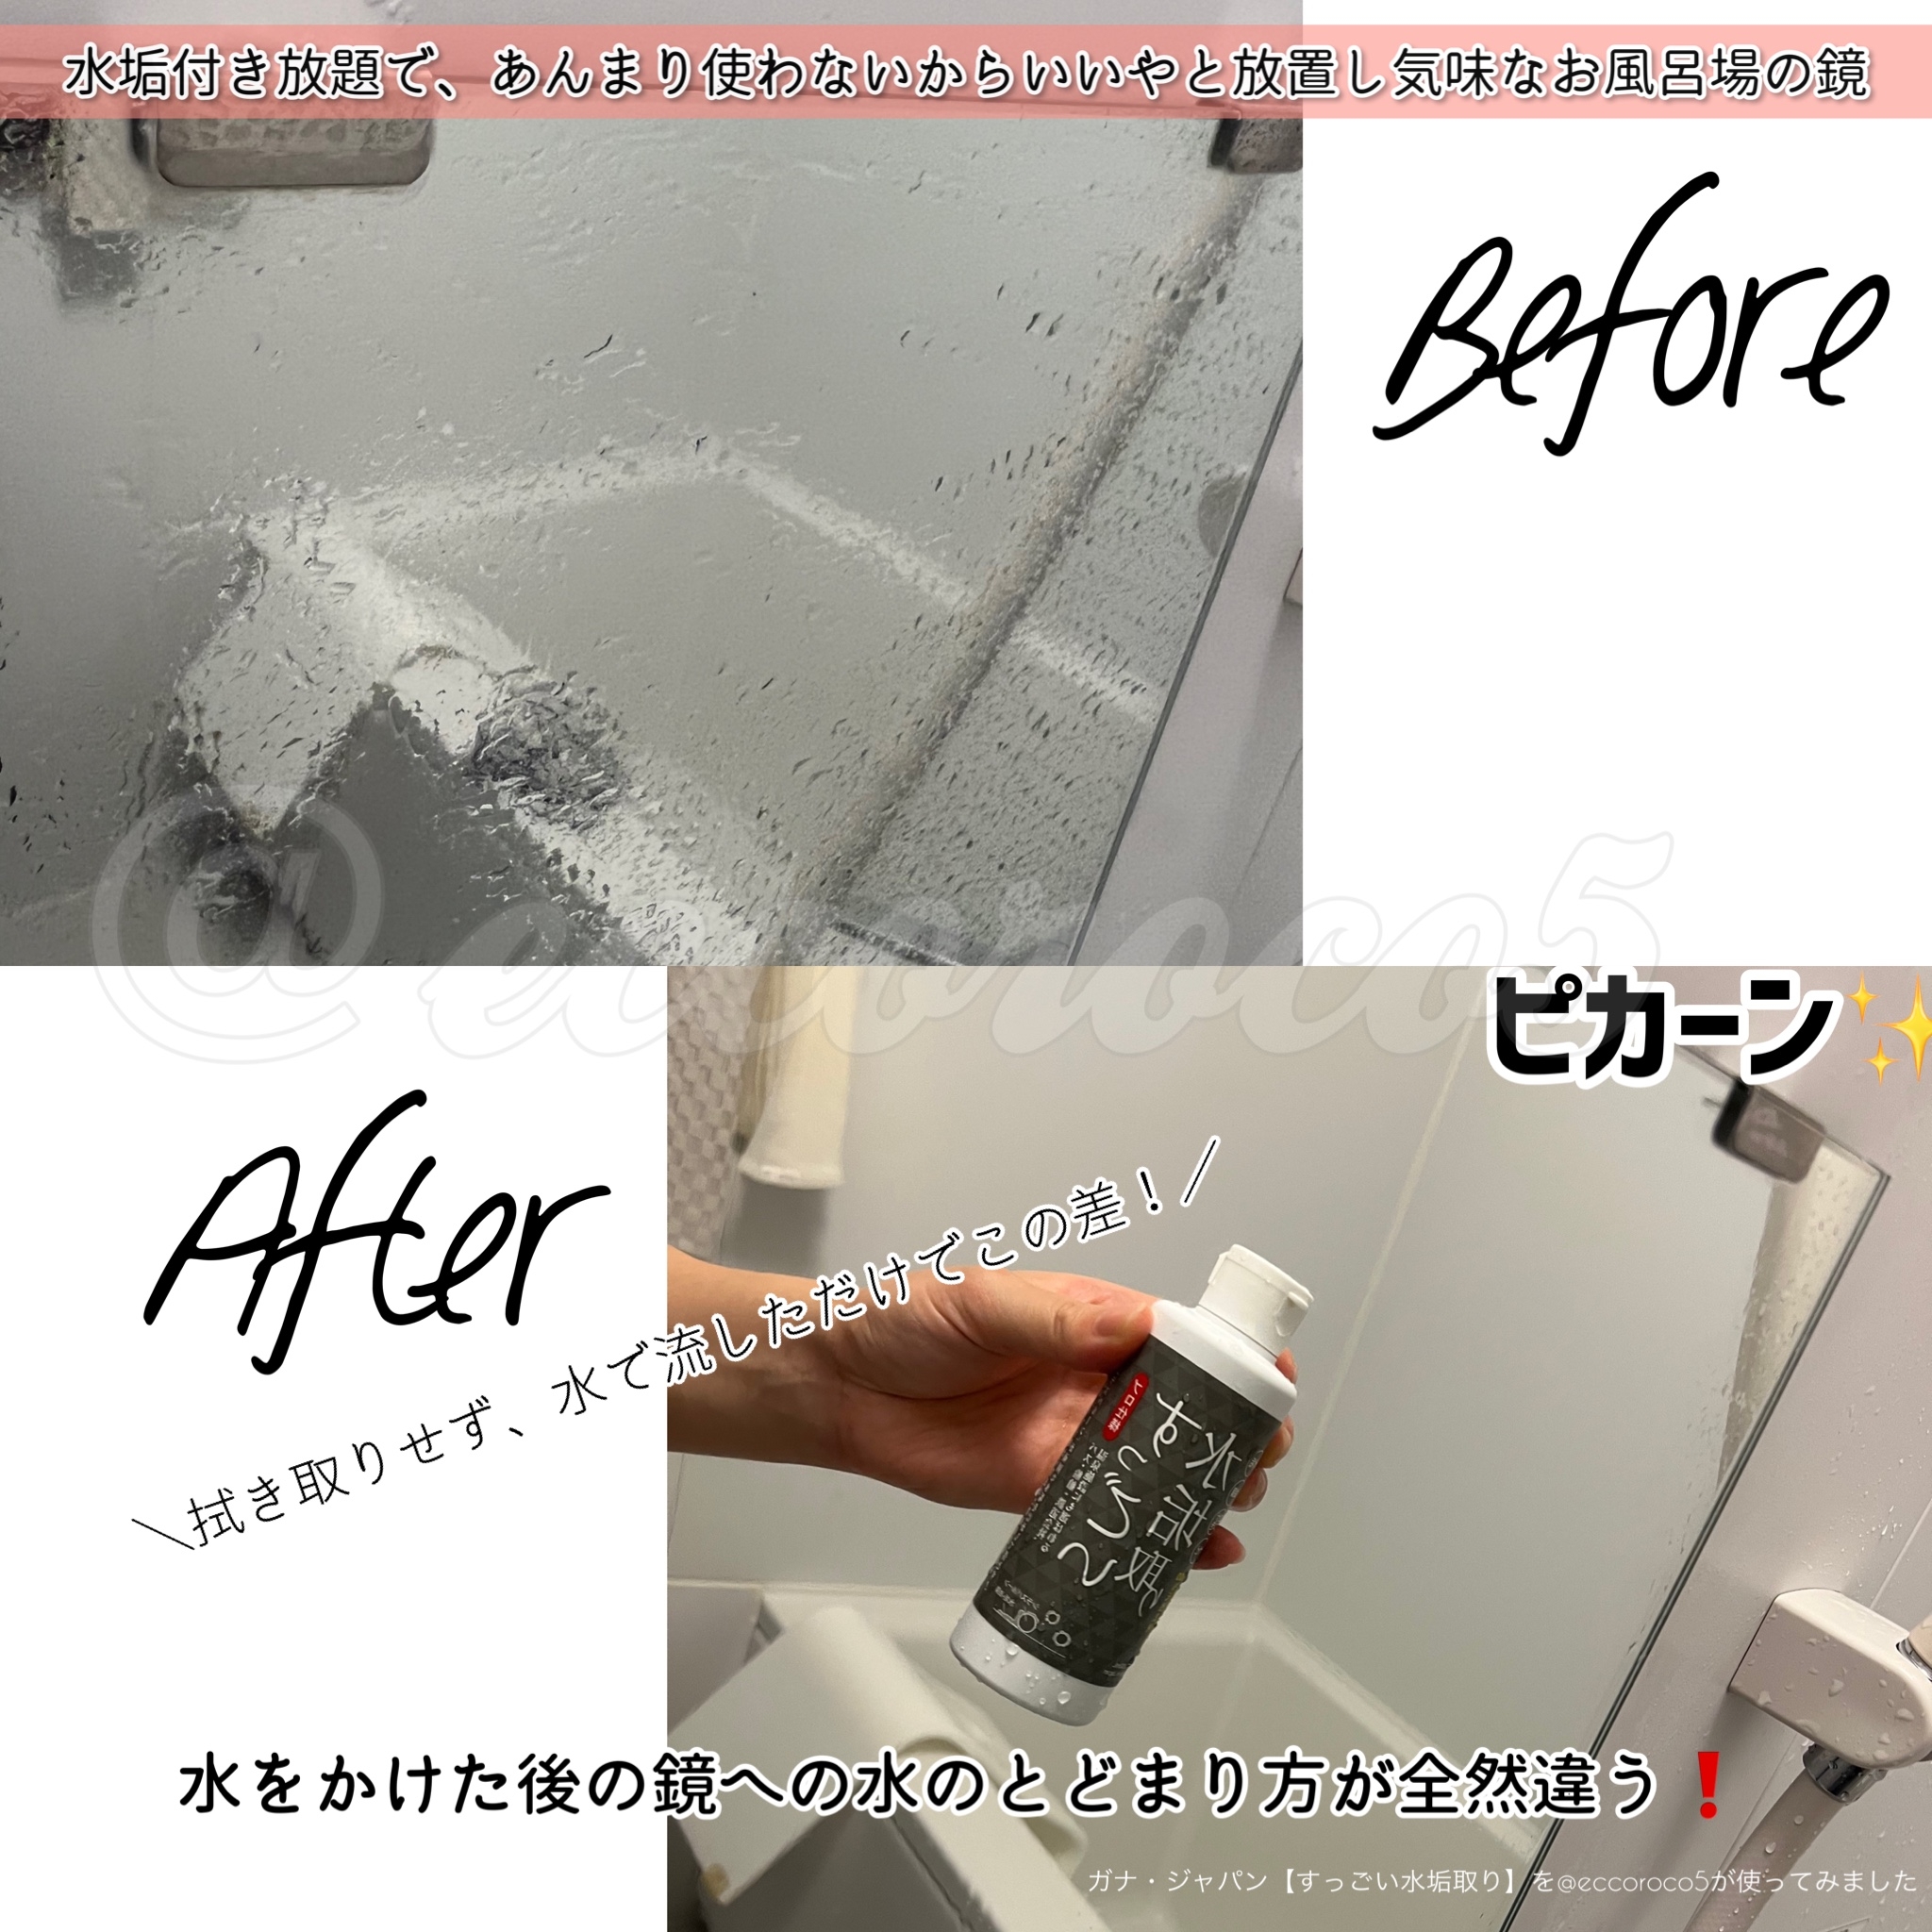 Ganna Japan(ガナ・ジャパン) すっごい水垢取りの良い点・メリットに関する@eccoroco5さんの口コミ画像3